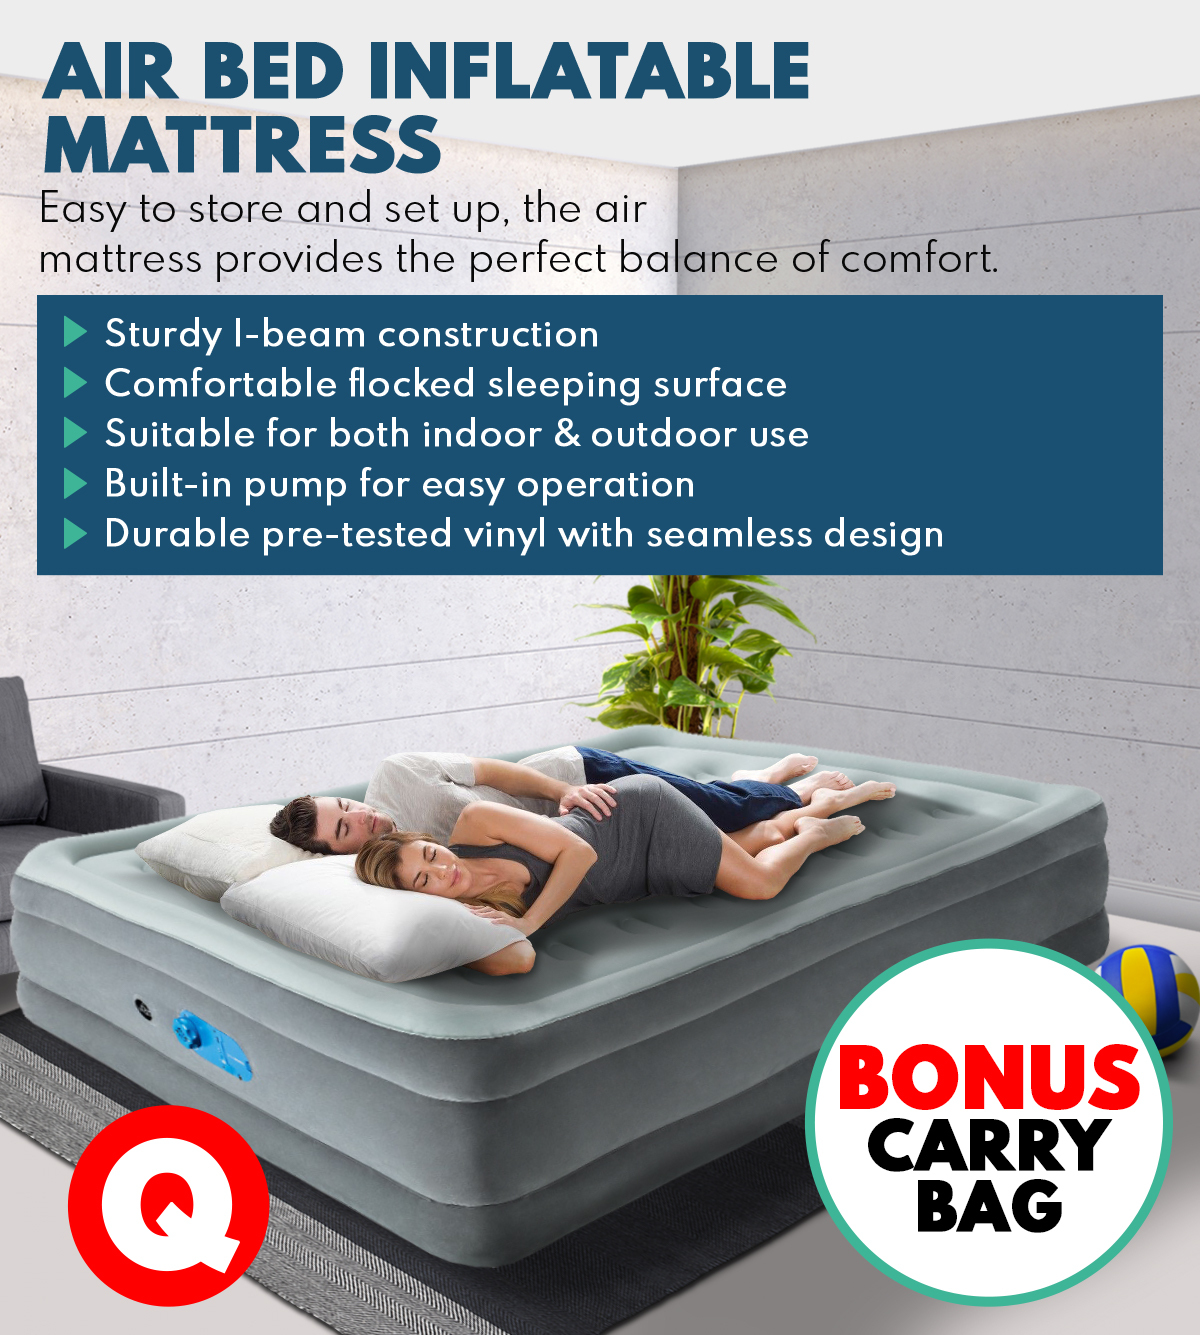 Queen Size Air Bed Inflatable Mattress Sleeping 46CM Mat Built-in Pump - Grey